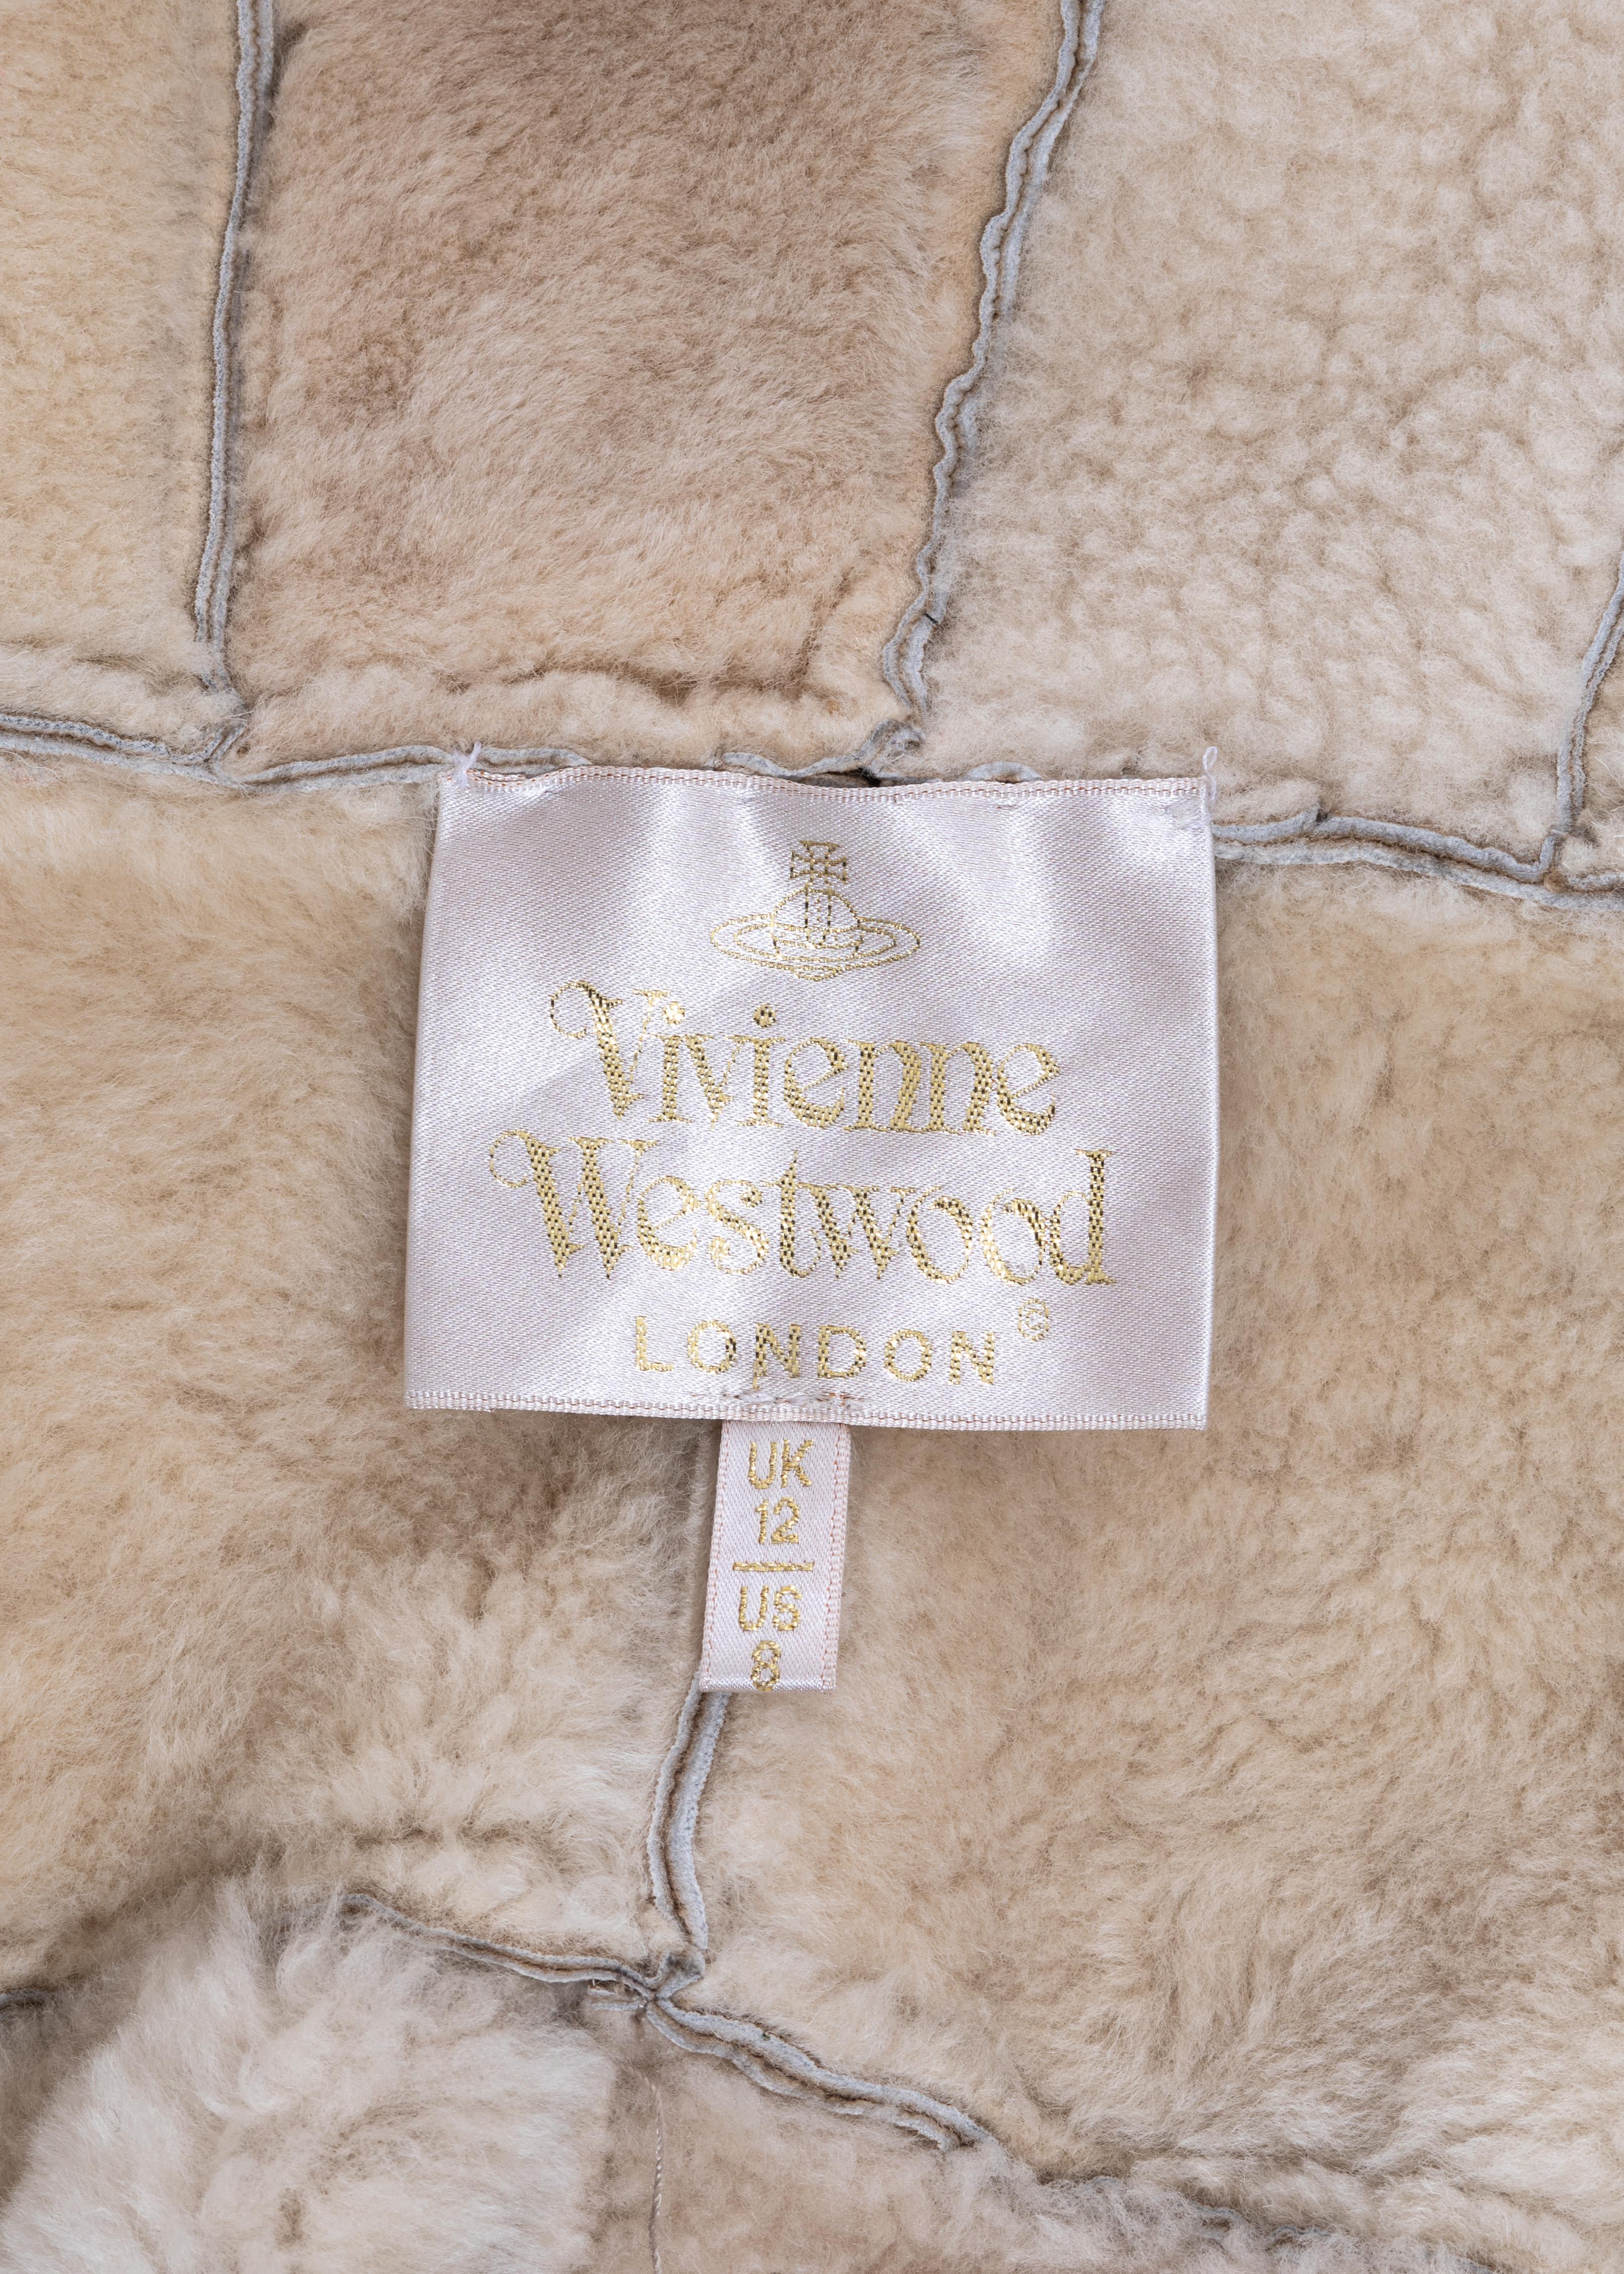 Vivienne Westwood cream sheepskin jacket, fw 1999 2